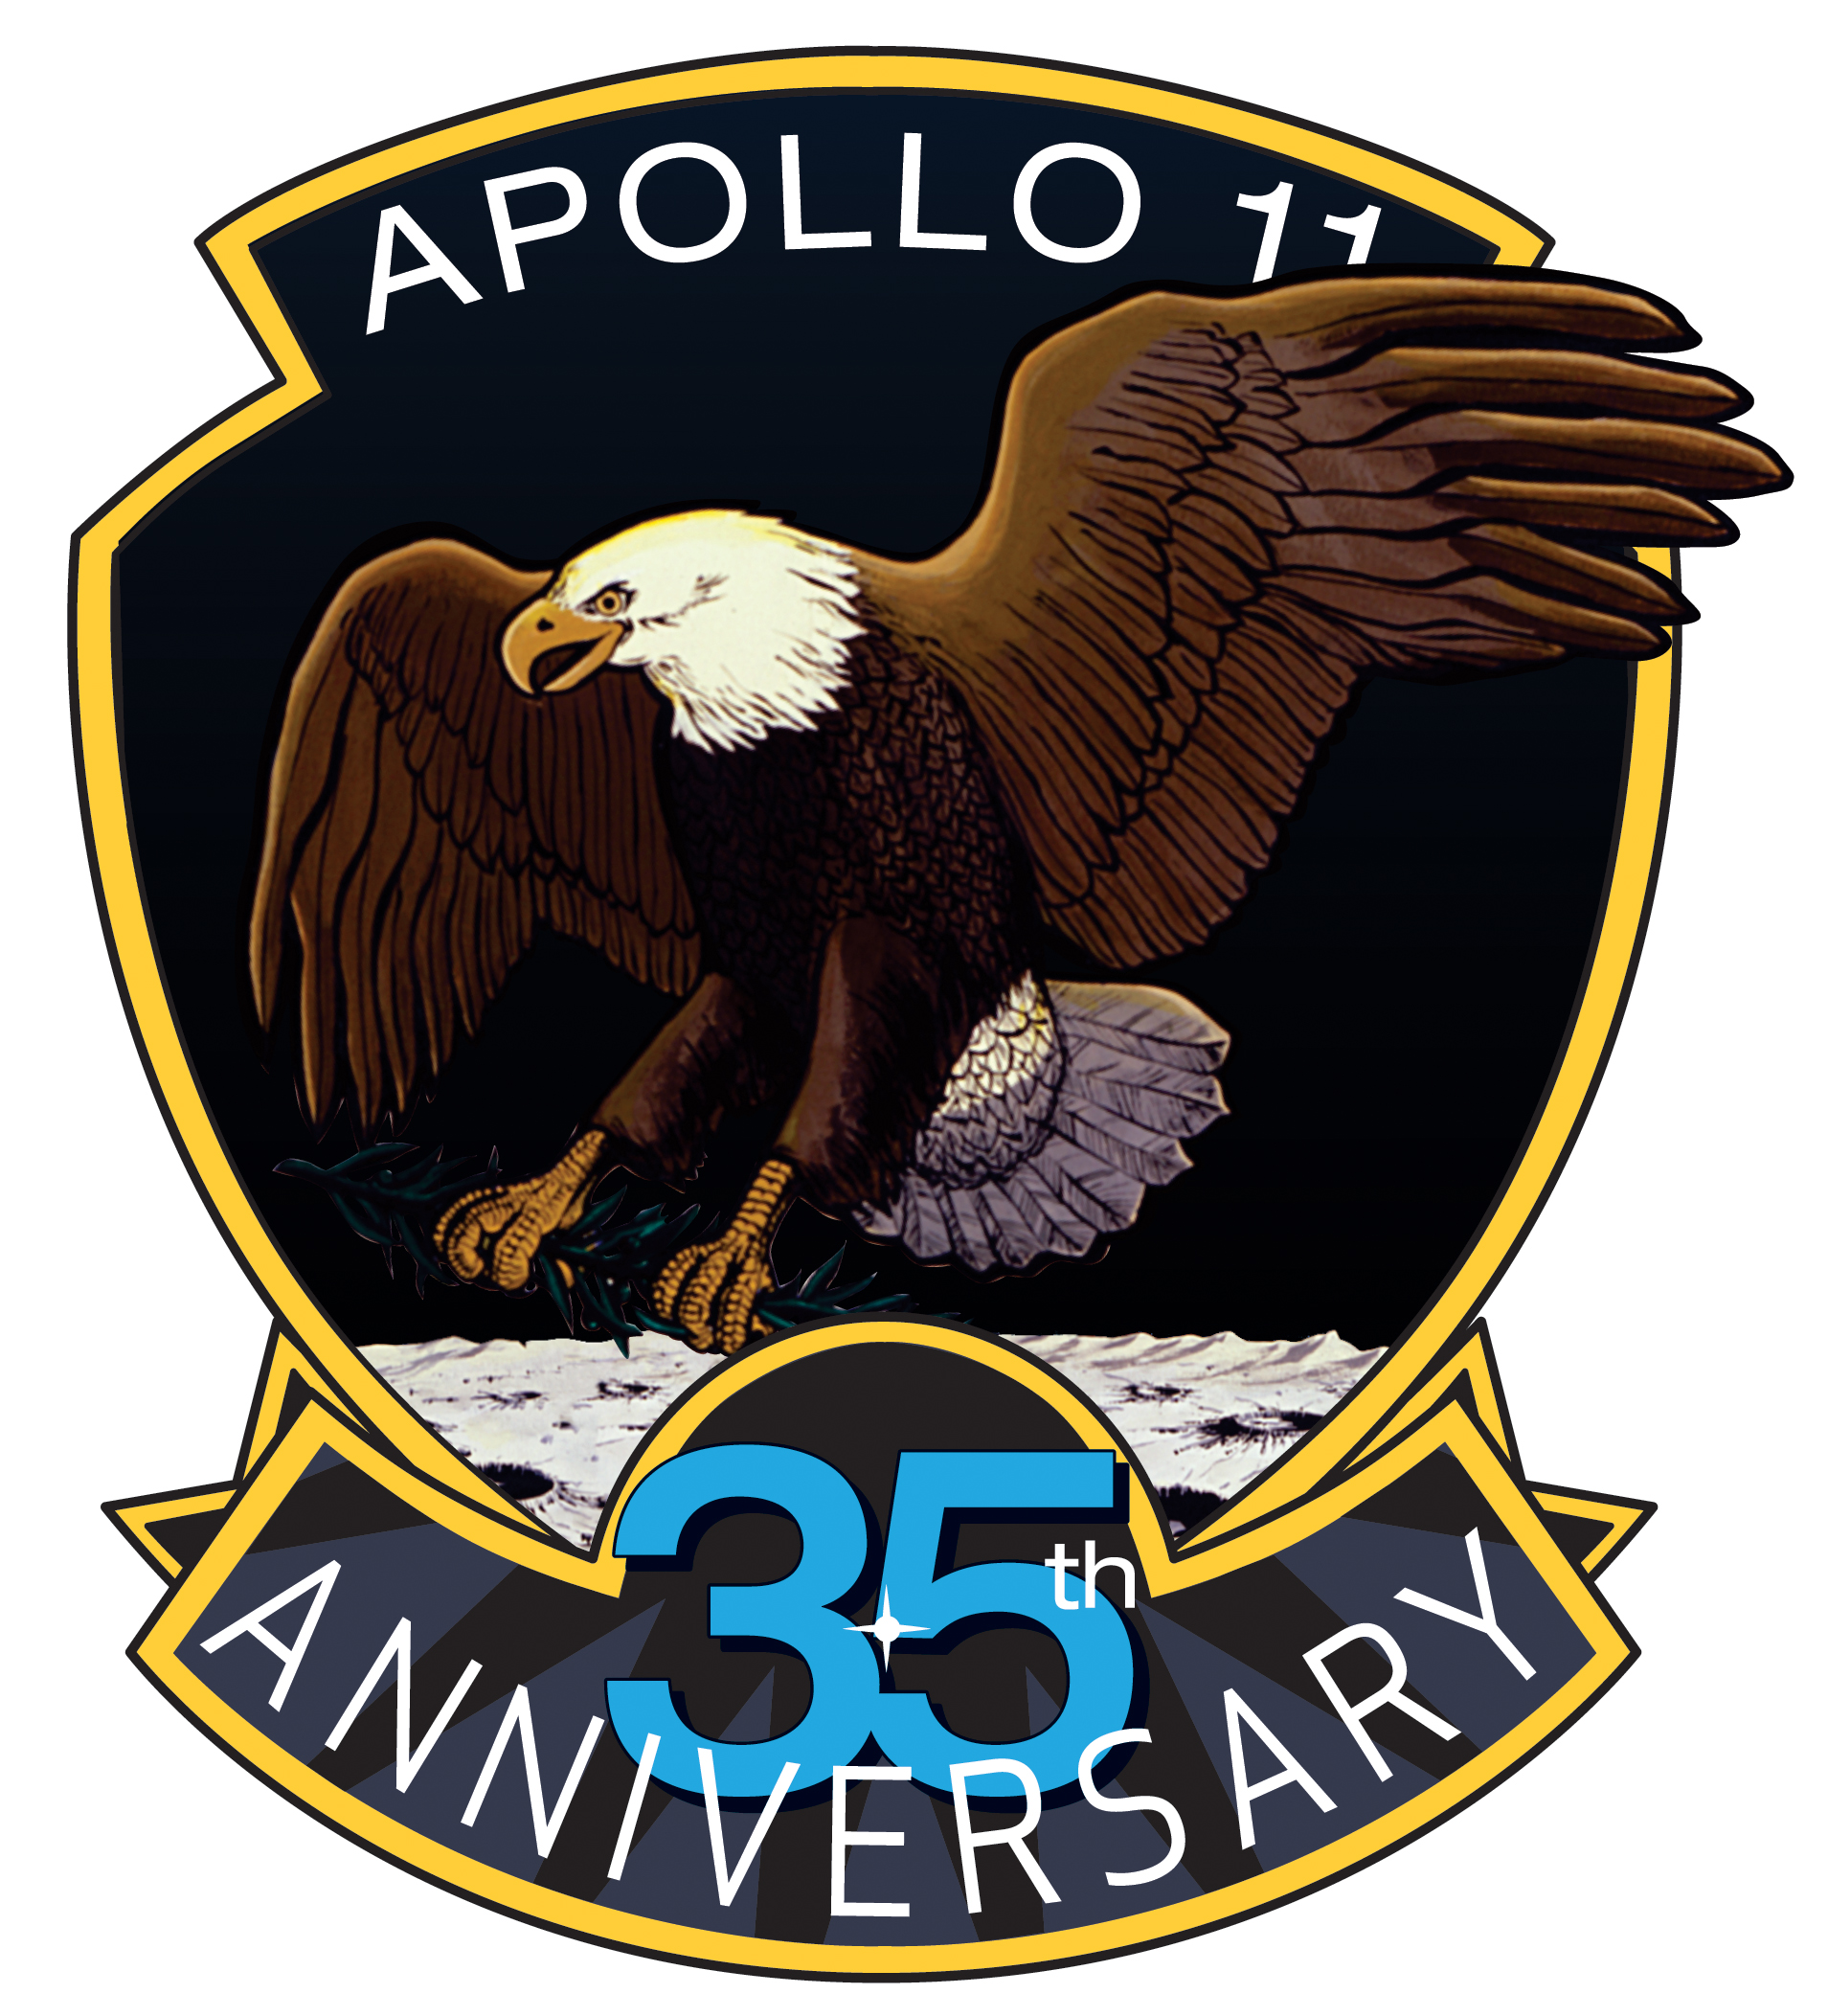 NASA - Apollo 11's 35th Anniversary